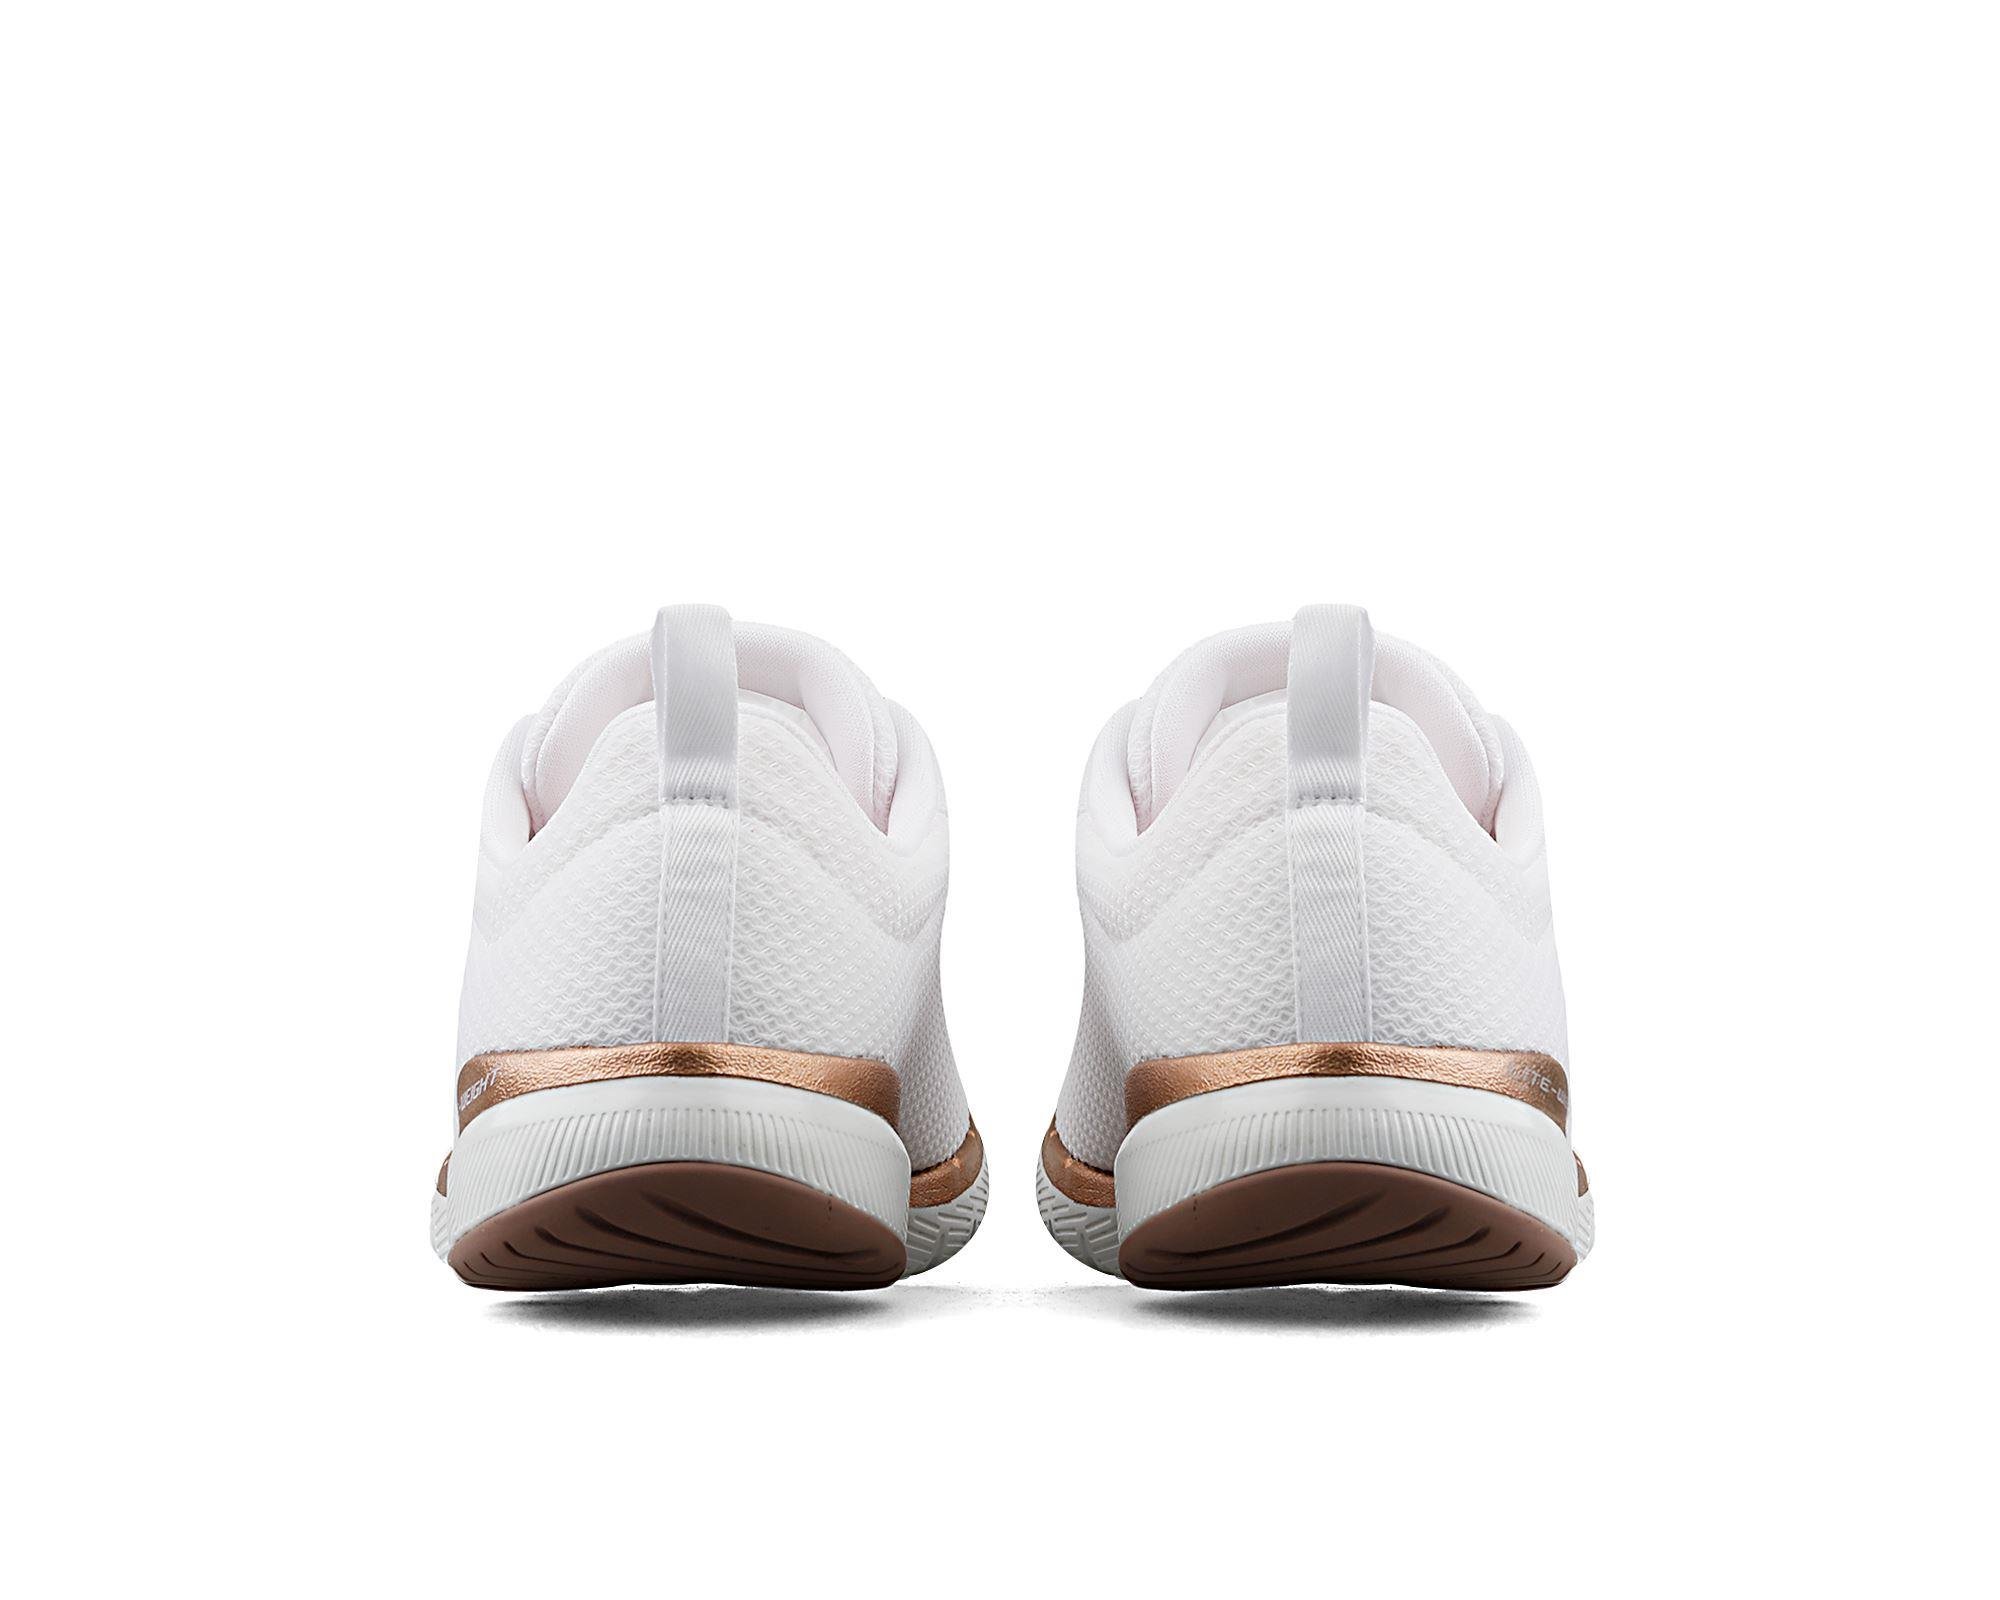 Kadın Sneaker S13070 WTRG Skechers FLEX APPEAL 3.0 BEYAZ-PEMBE-ALTIN